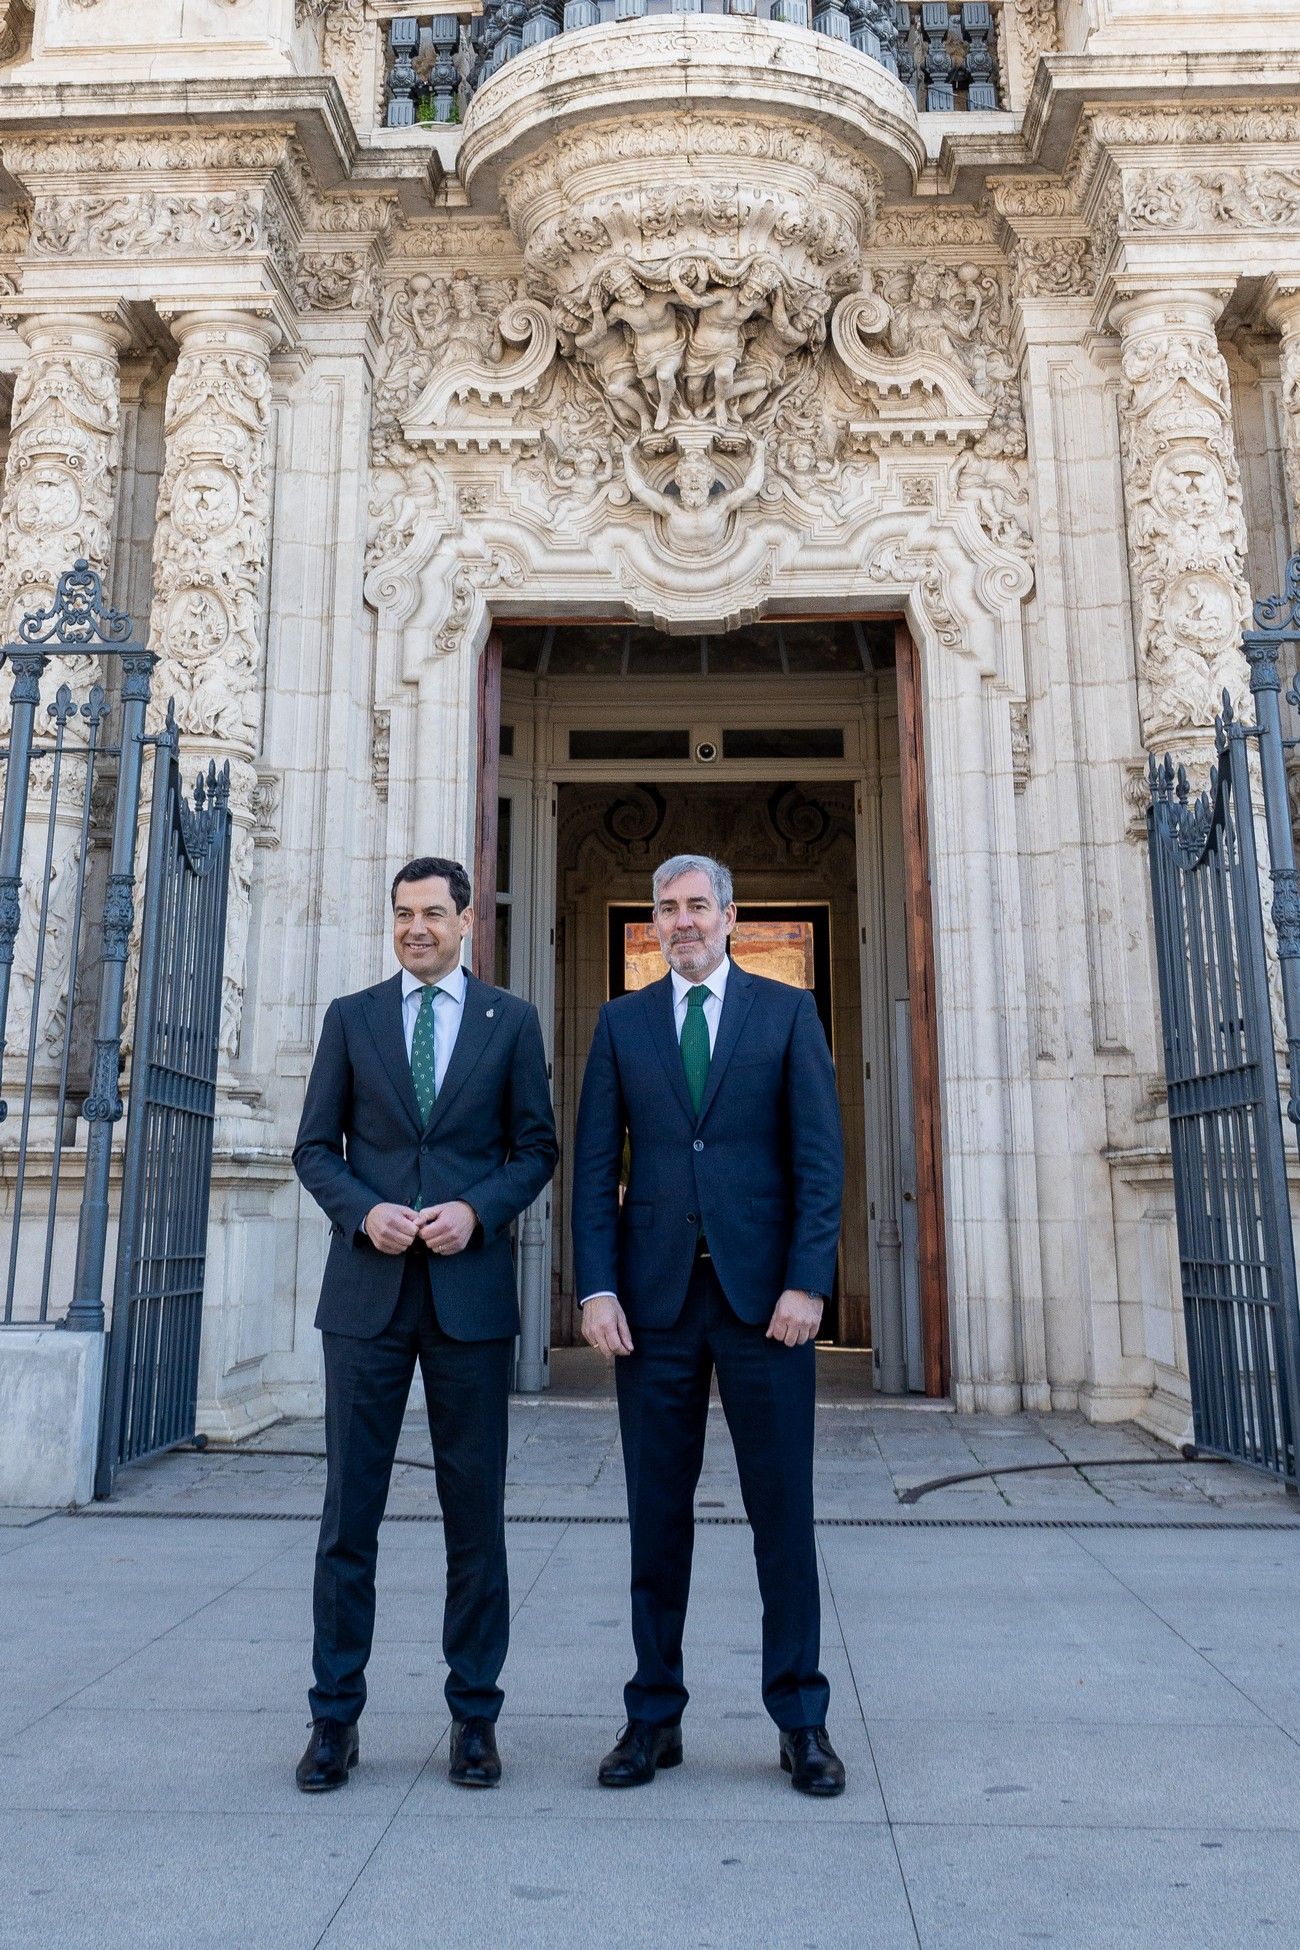 Imagen del encuentro de este miércoles entre los presidentes de Andalucía y Canarias, Juan Manuel Moreno y Fernando Clavijo